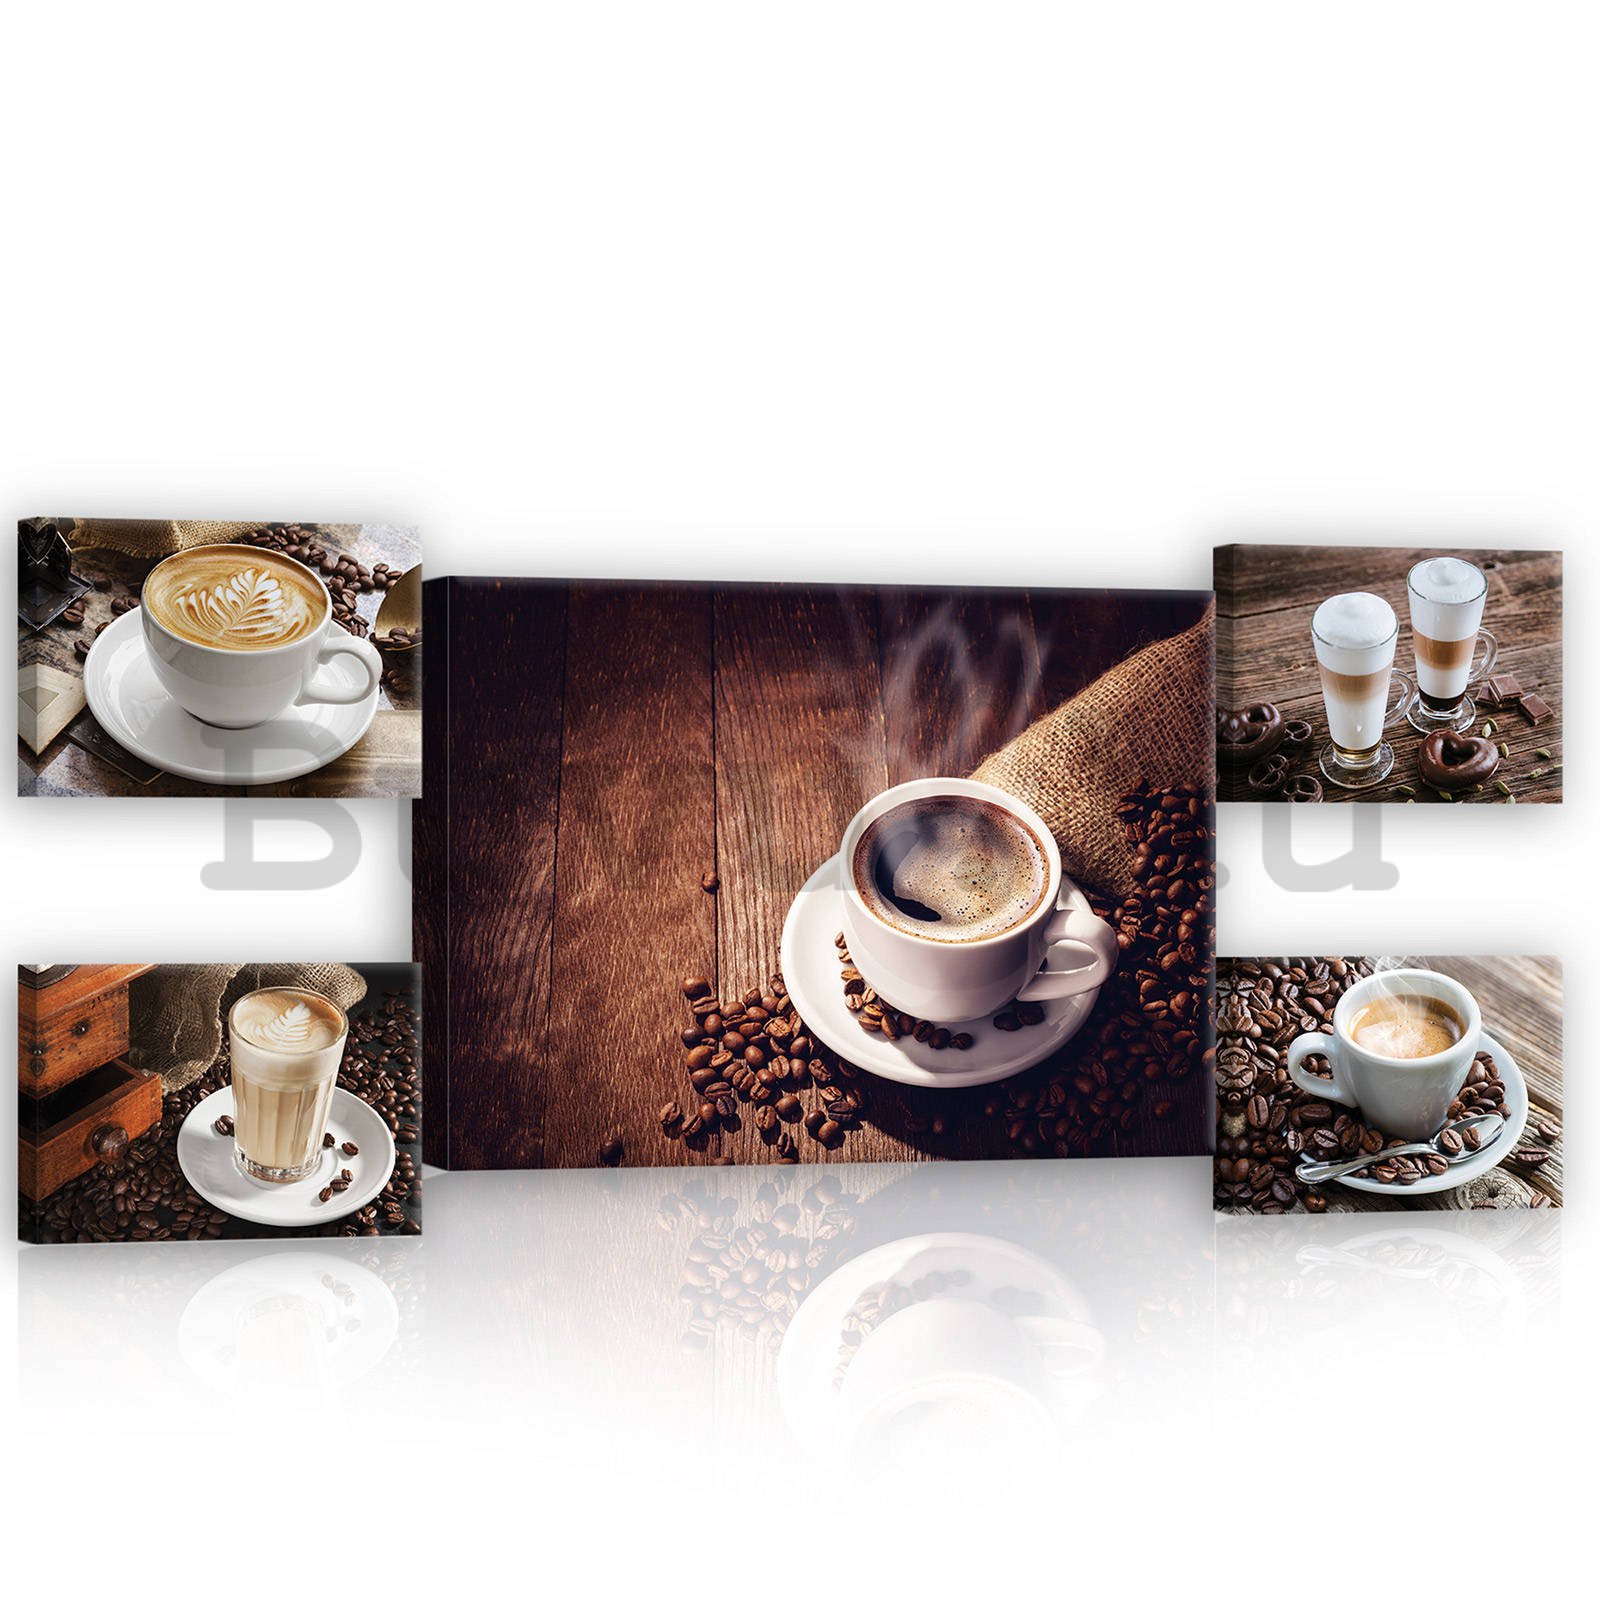 Vászonkép: Kávészünet - készlet 1 db 70x50 cm és 4 db 32,4x22,8 cm